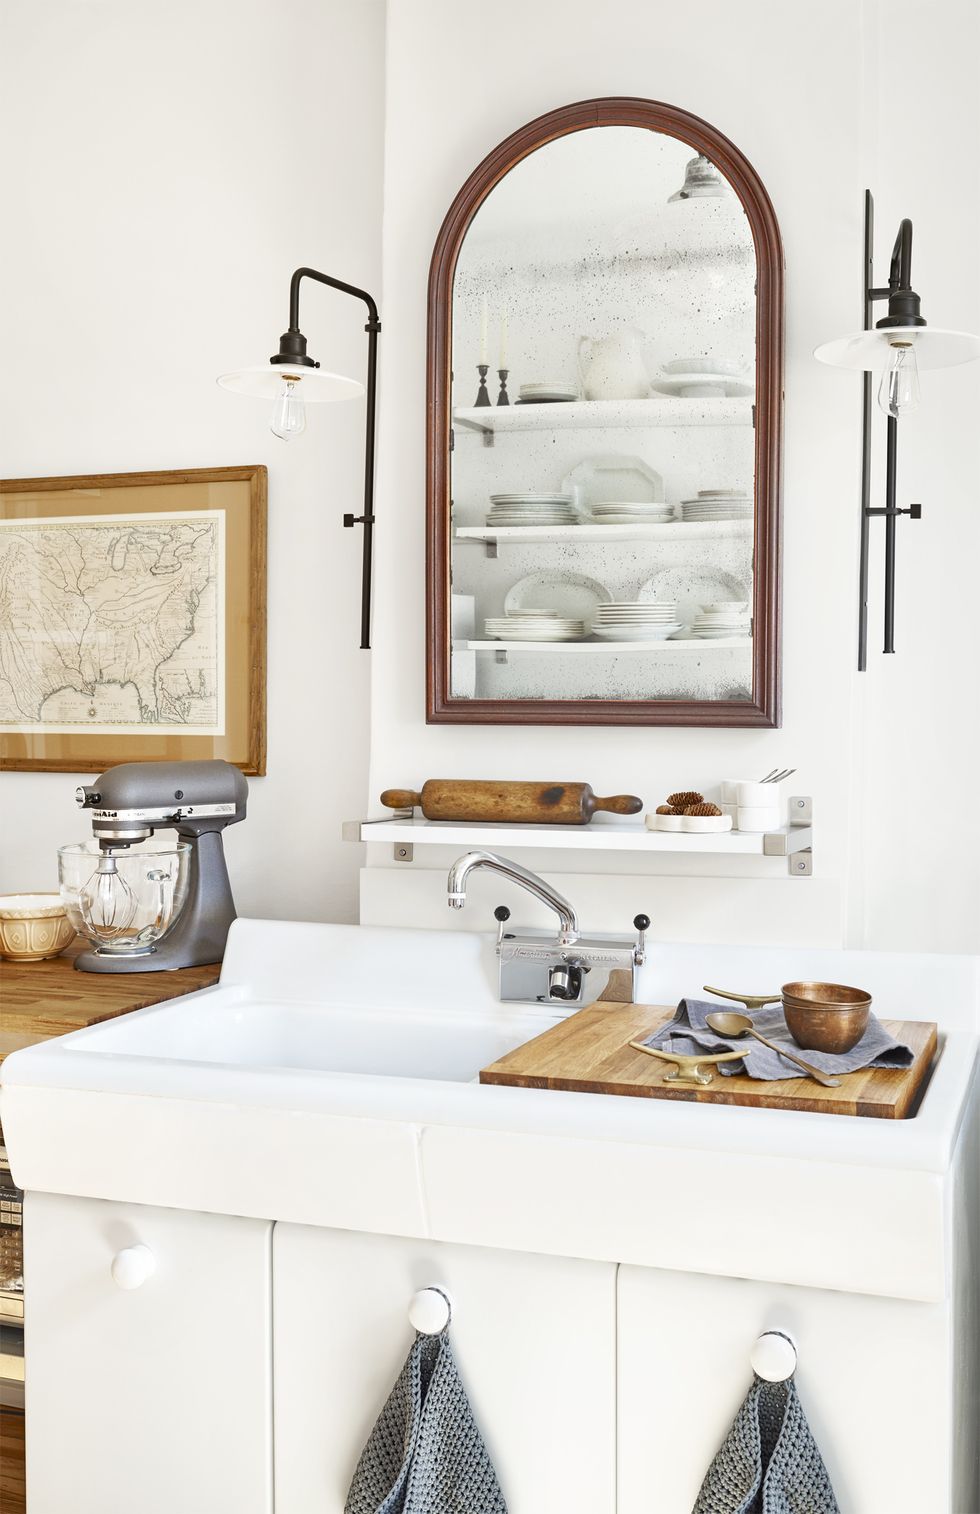 Plumbing fixture, Room, Bathroom sink, Tap, Wall, Sink, Porcelain, Interior design, Bathroom cabinet, Plumbing, 